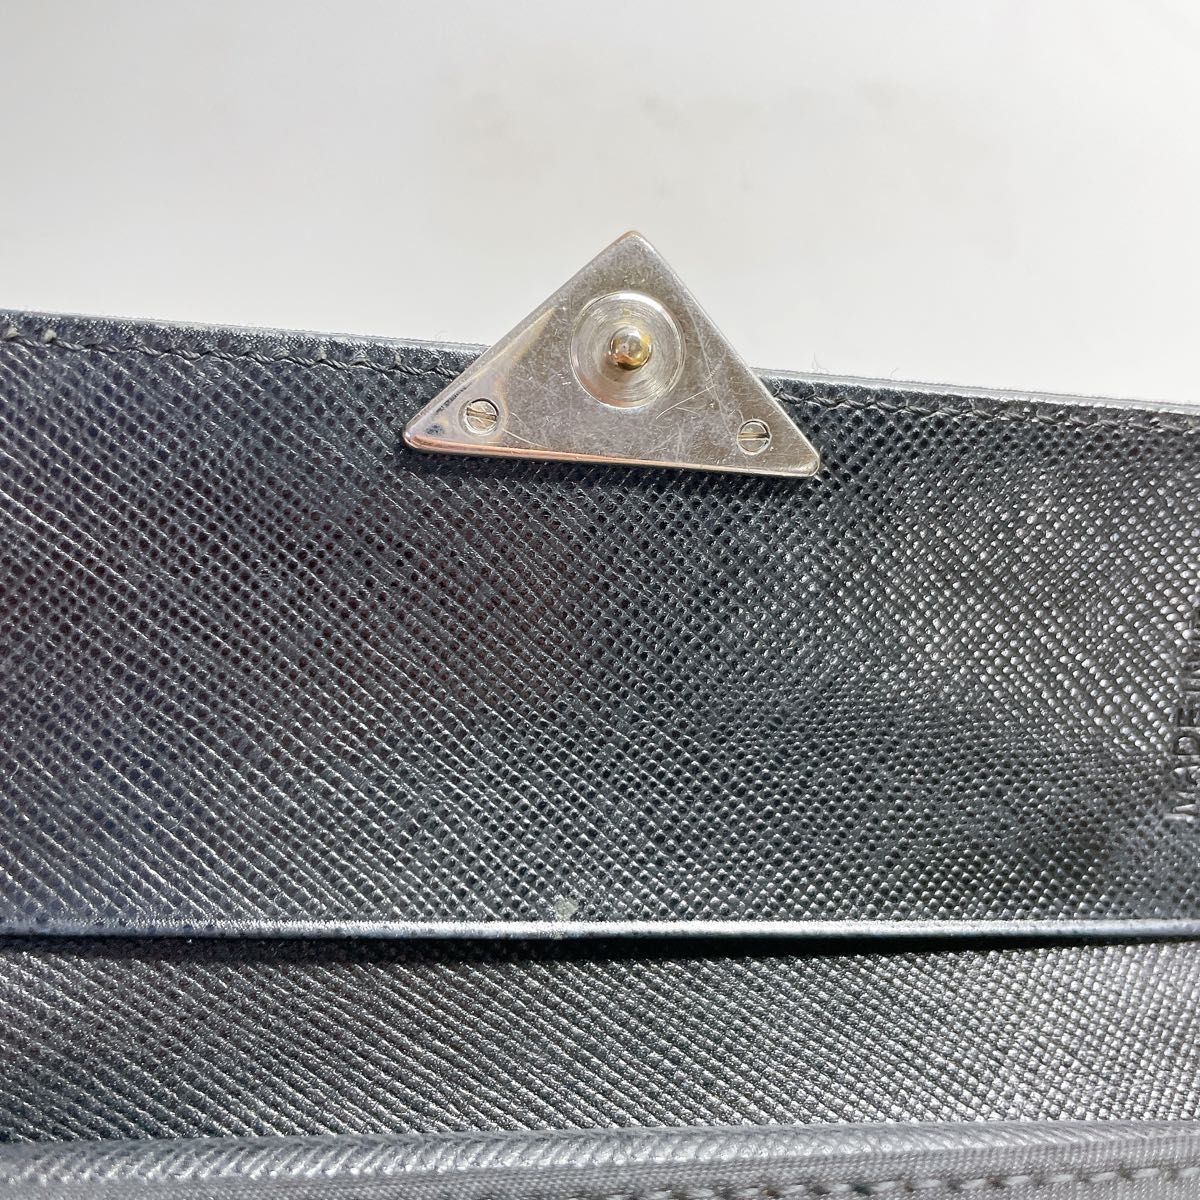 美品 PRADA プラダ 三つ折財布 ブラック ナイロン レザー 三角プレート 三角ロゴ サフィアーノ